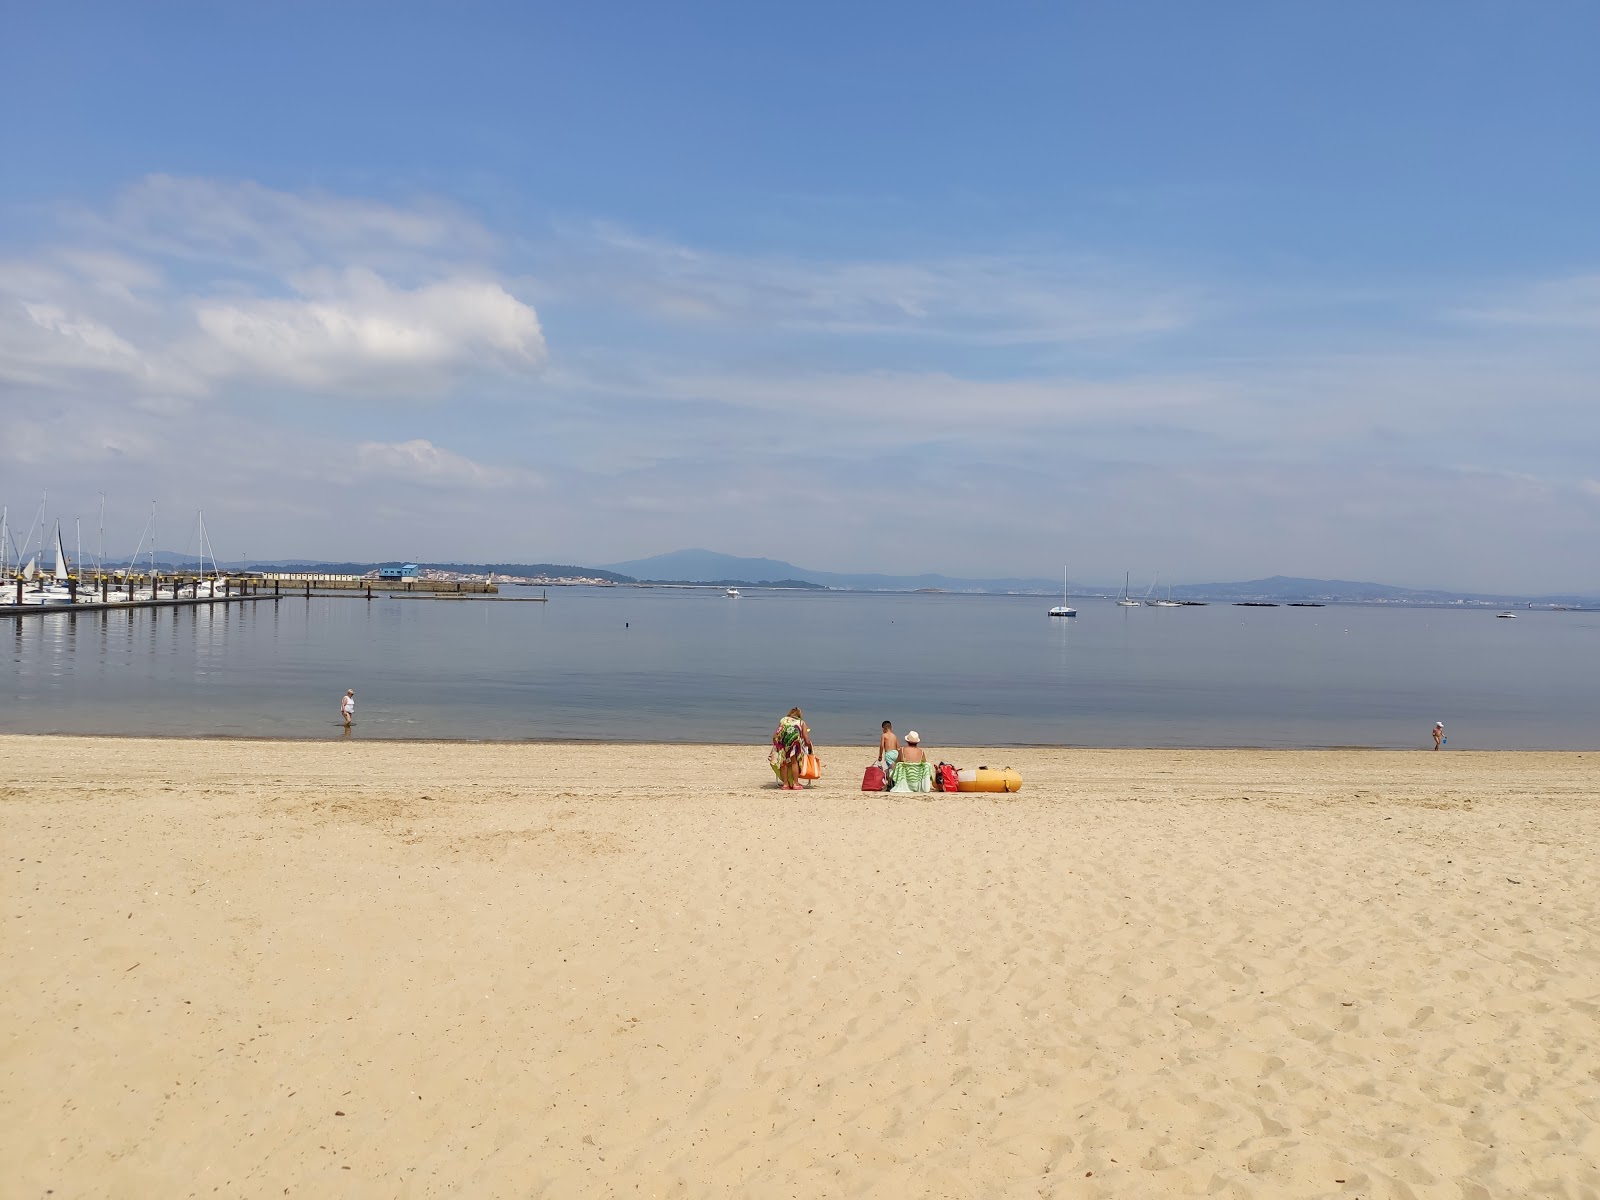 Fotografie cu Areal beach - locul popular printre cunoscătorii de relaxare